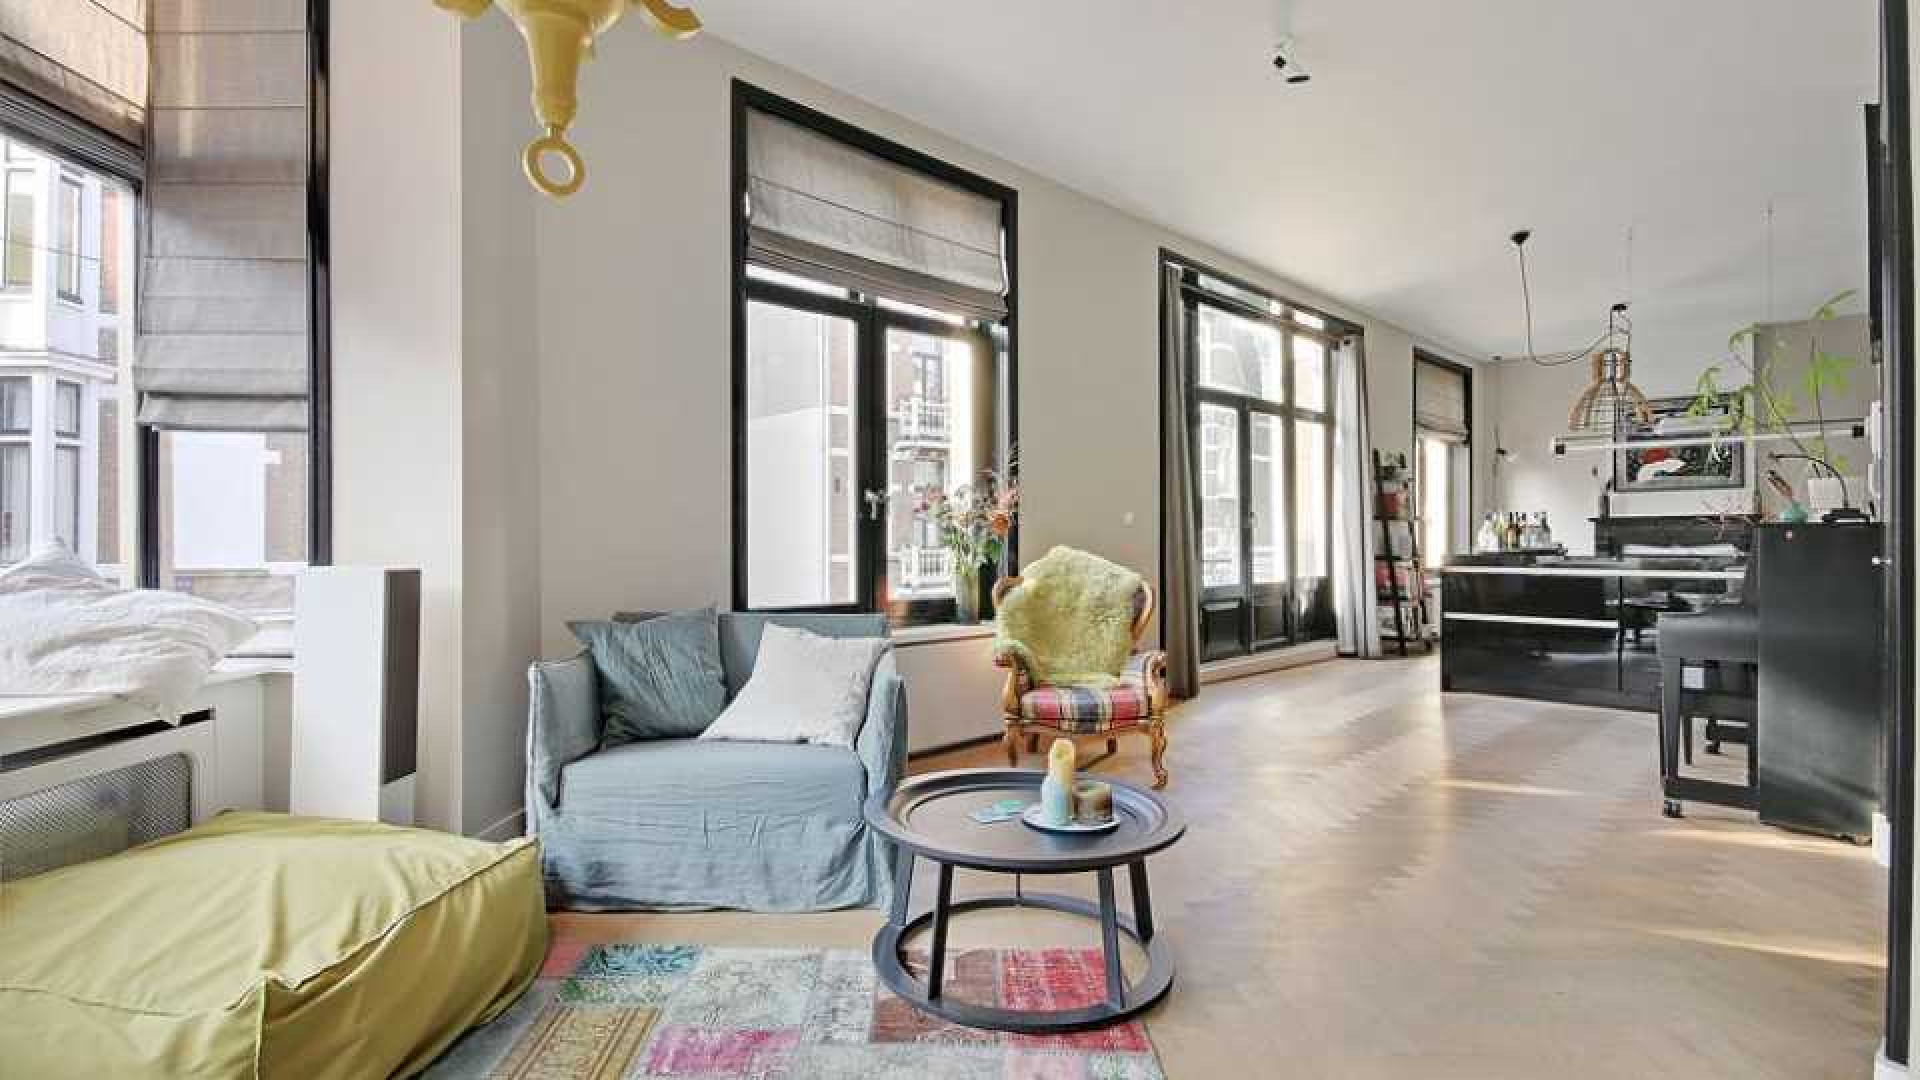 Leco van Zadelhoff koopt voor miljoen euro luxe appartement. Zie foto's